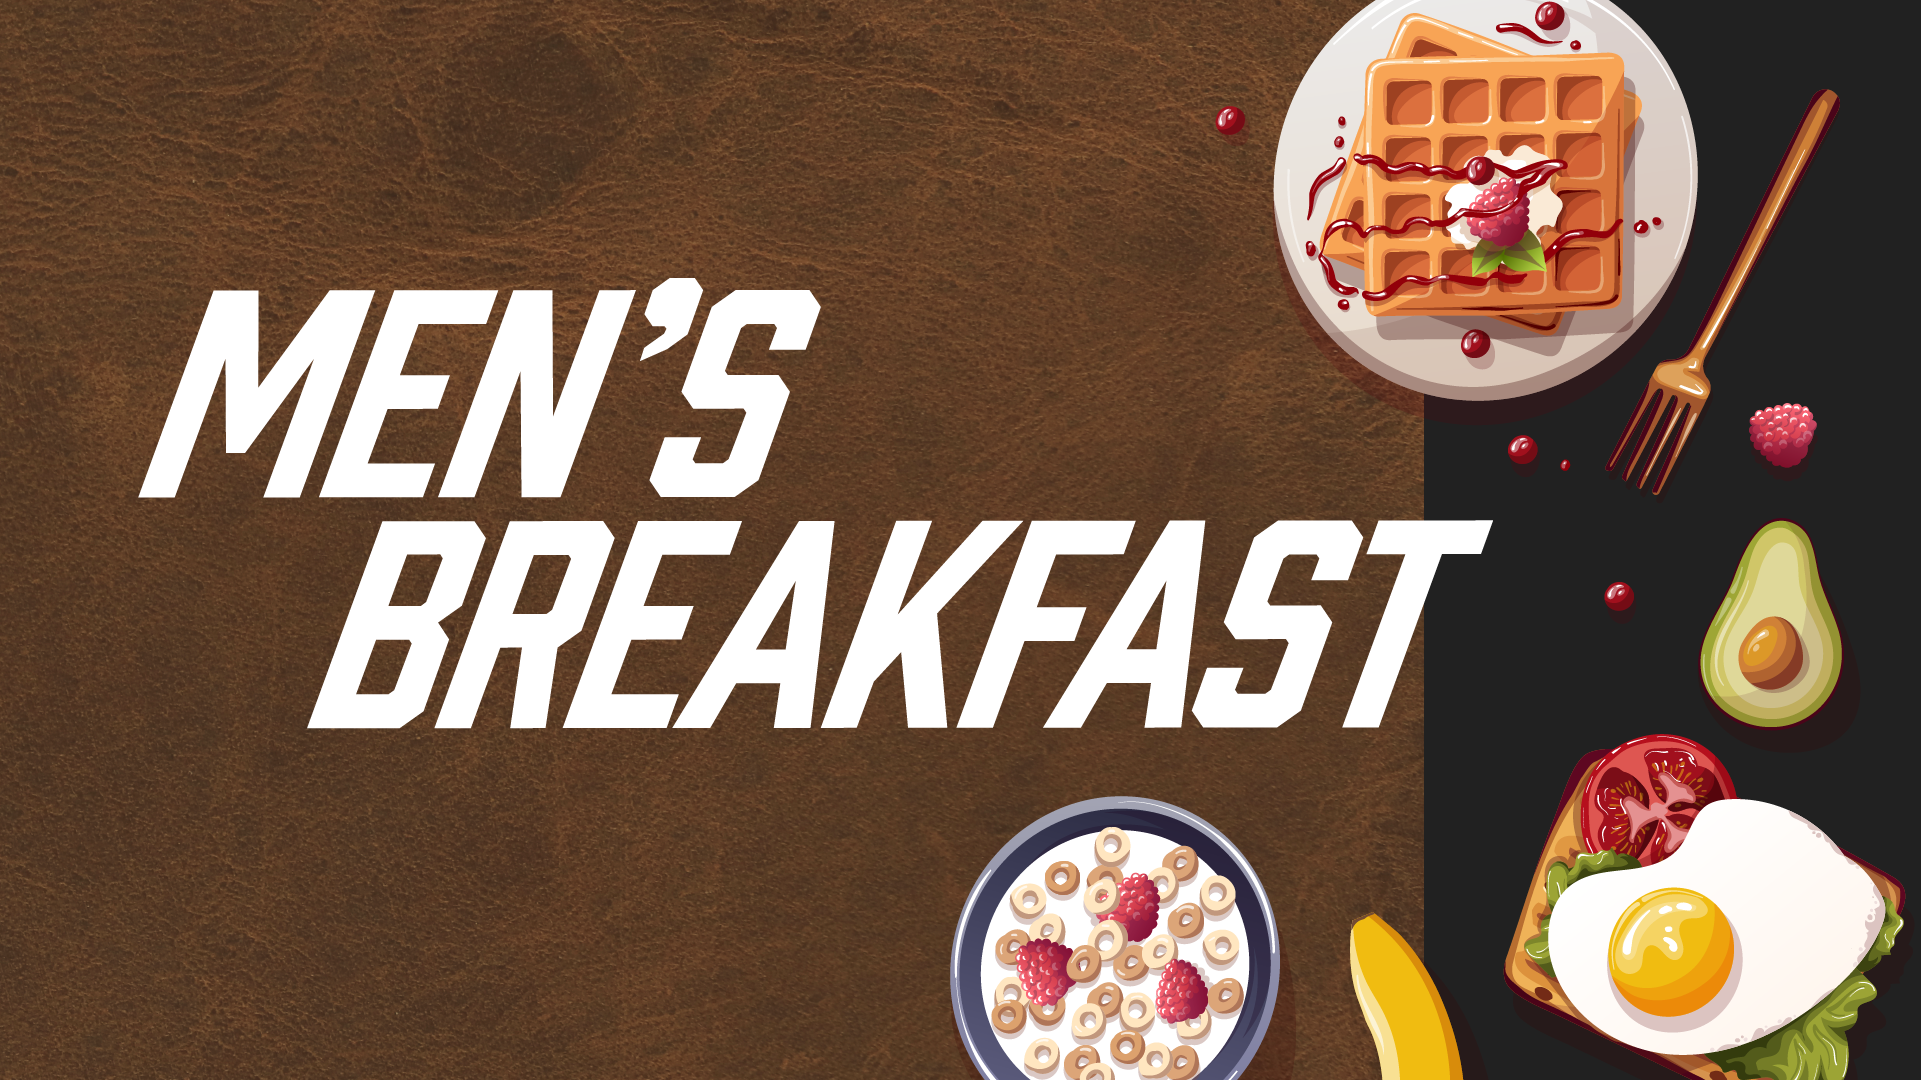 Men’s Breakfast